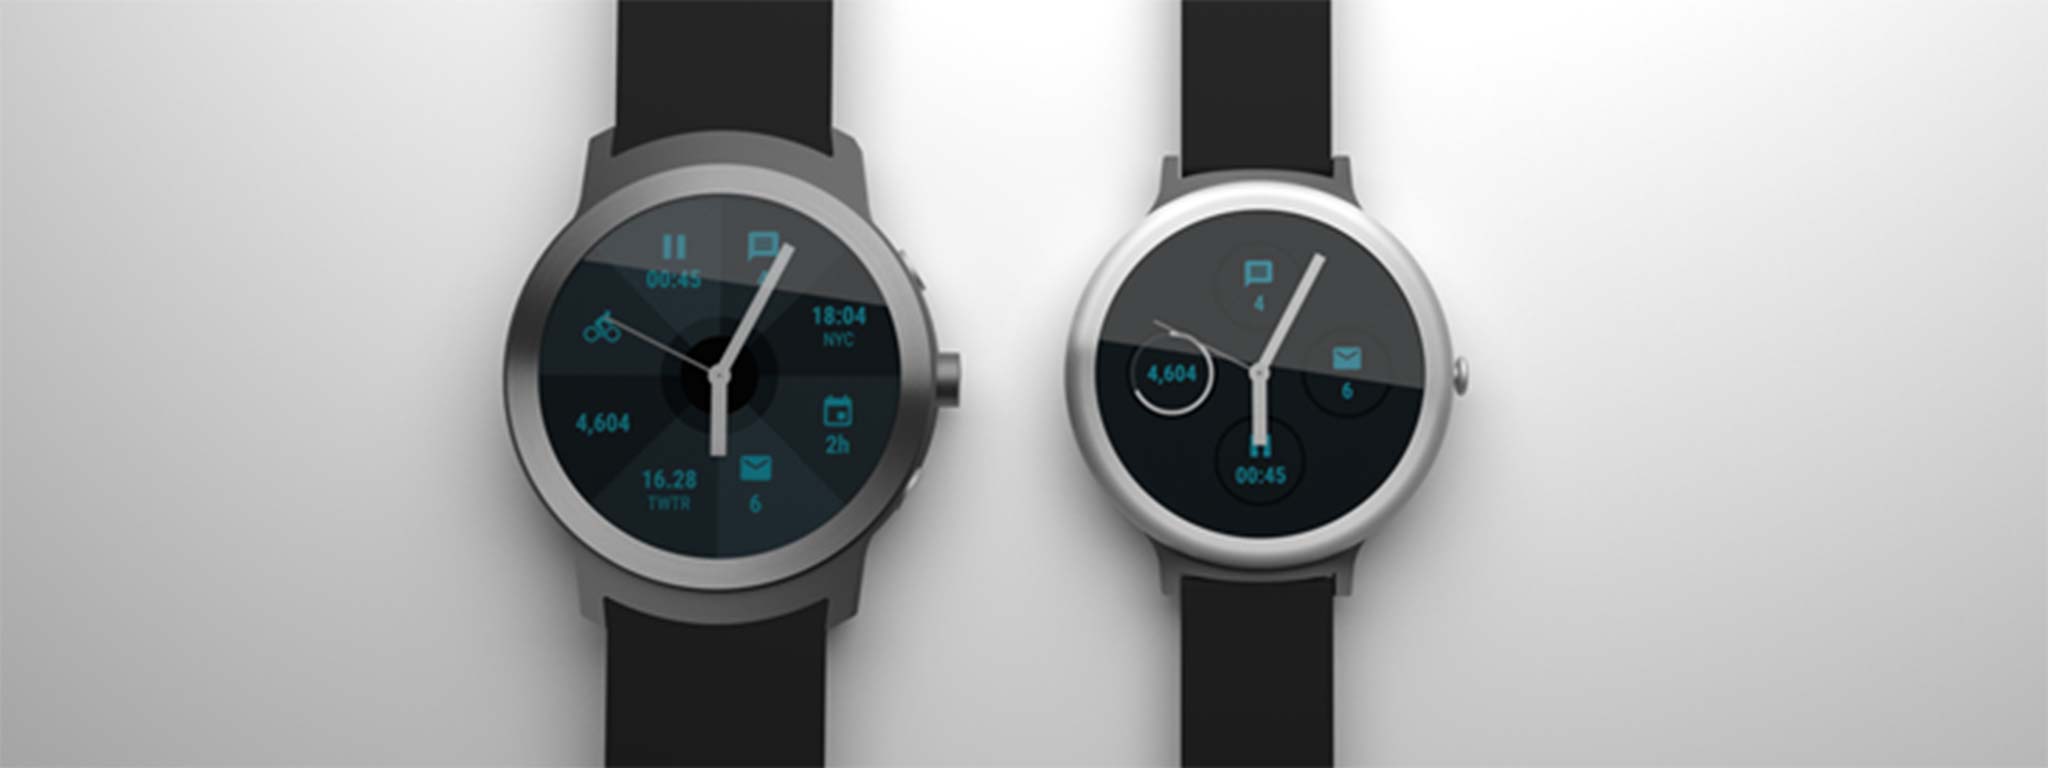 Google: sẽ có hai smartwatch cao cấp vào đầu năm 2017